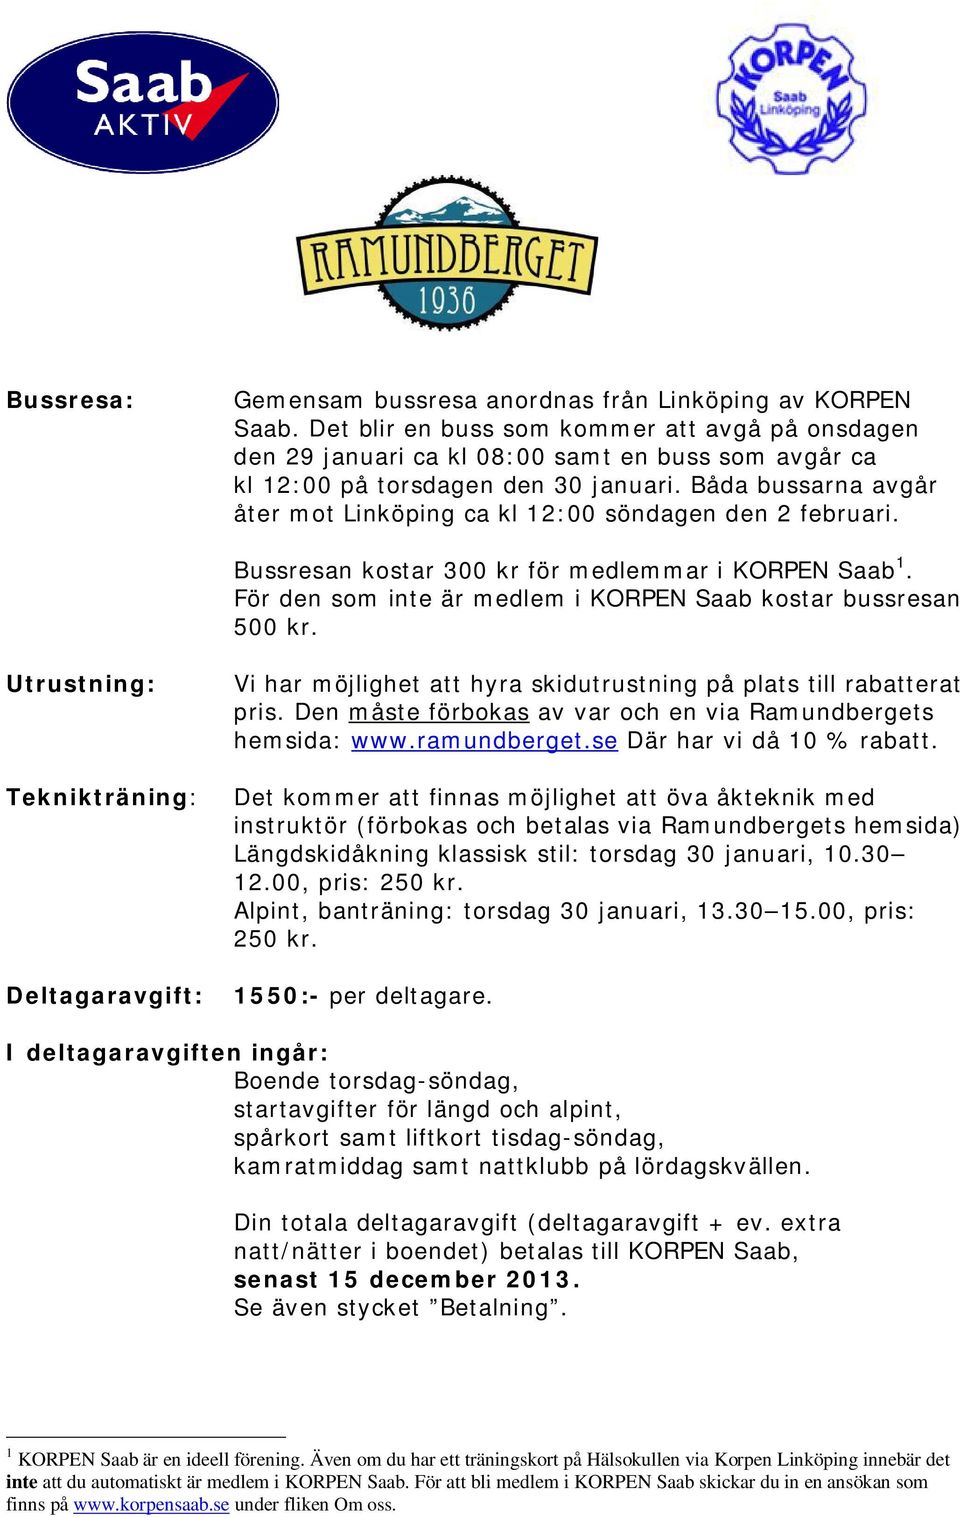 Båda bussarna avgår åter mot Linköping ca kl 12:00 söndagen den 2 februari. Bussresan kostar 300 kr för medlemmar i KORPEN Saab 1. För den som inte är medlem i KORPEN Saab kostar bussresan 500 kr.